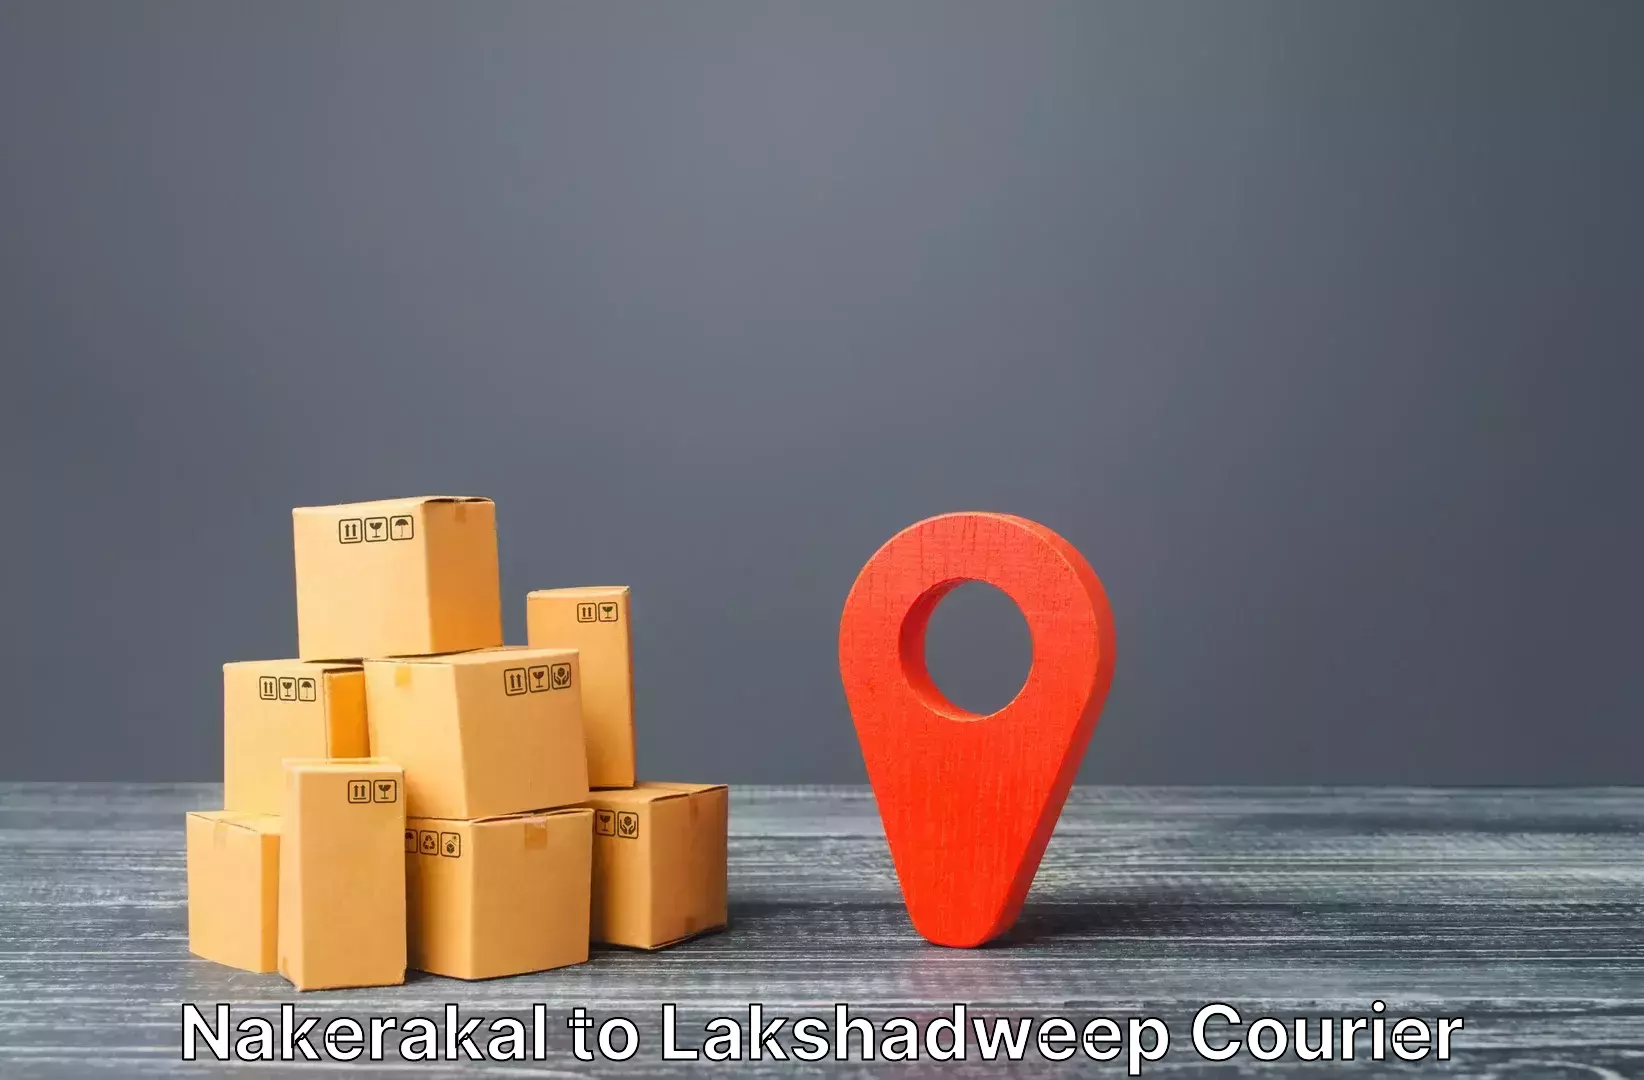 Baggage transport estimate Nakerakal to Lakshadweep